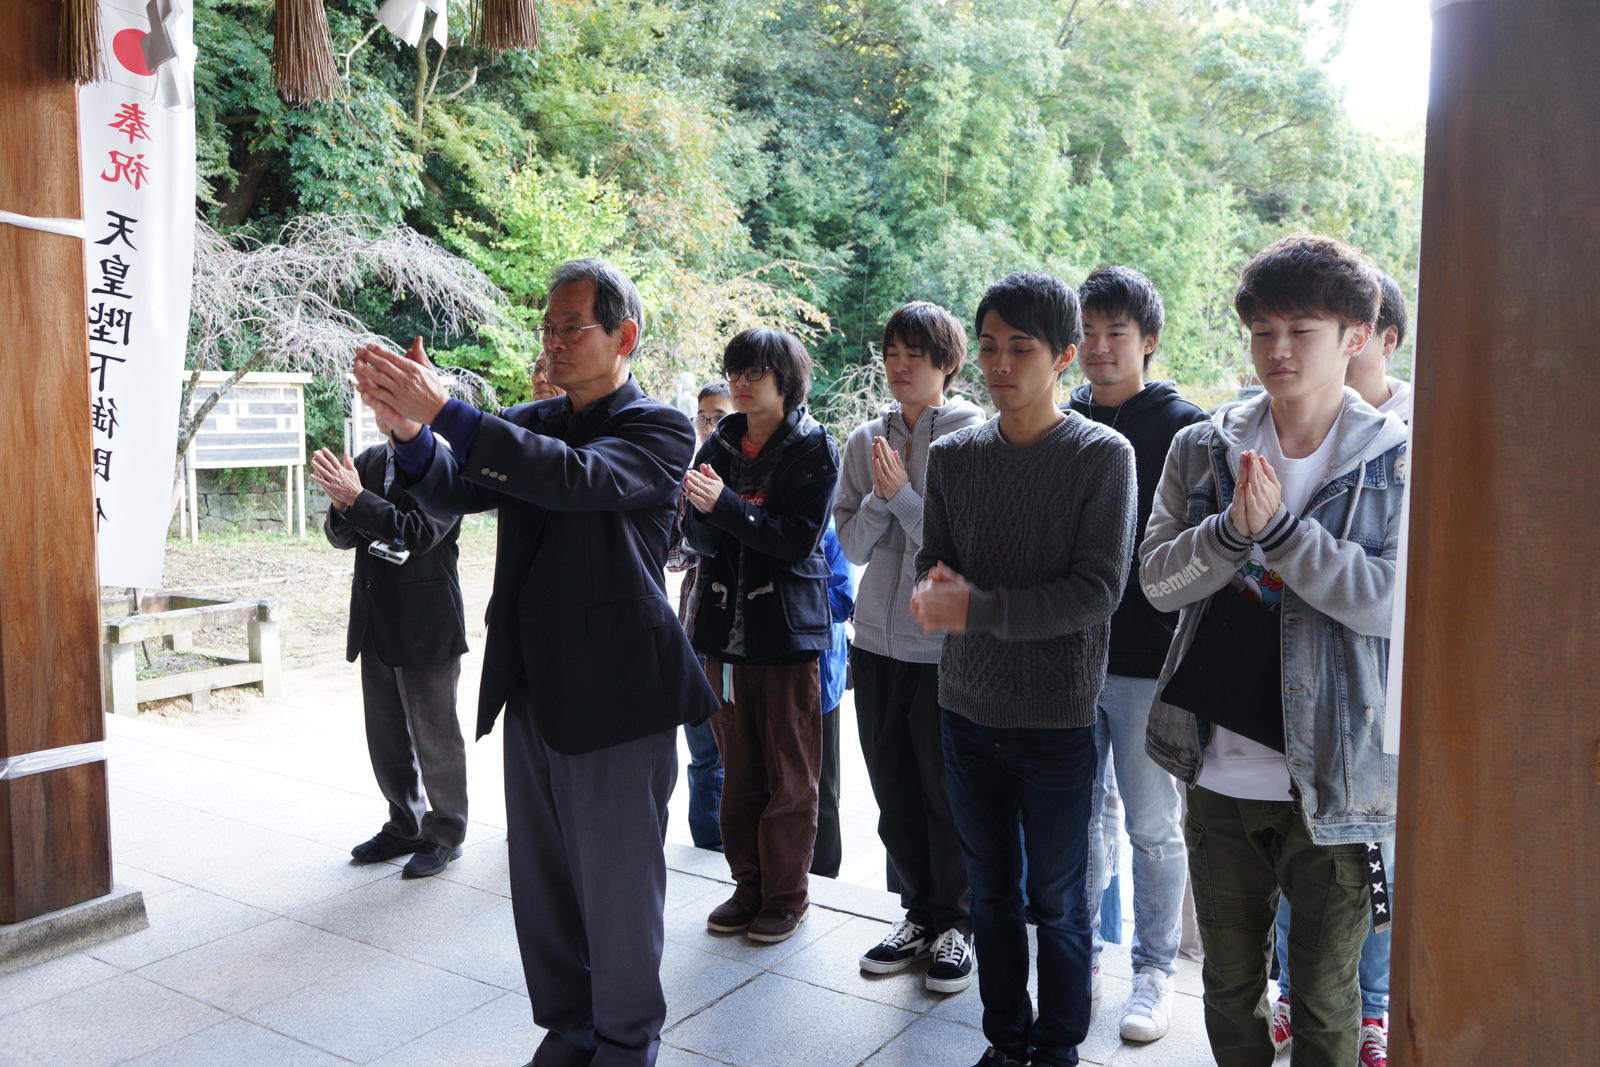 大阪電気通信大学デジタルゲーム学科 社会プロジェクトチーム が 四條畷神社でポスターセッションを開催しました 大学プレスセンター